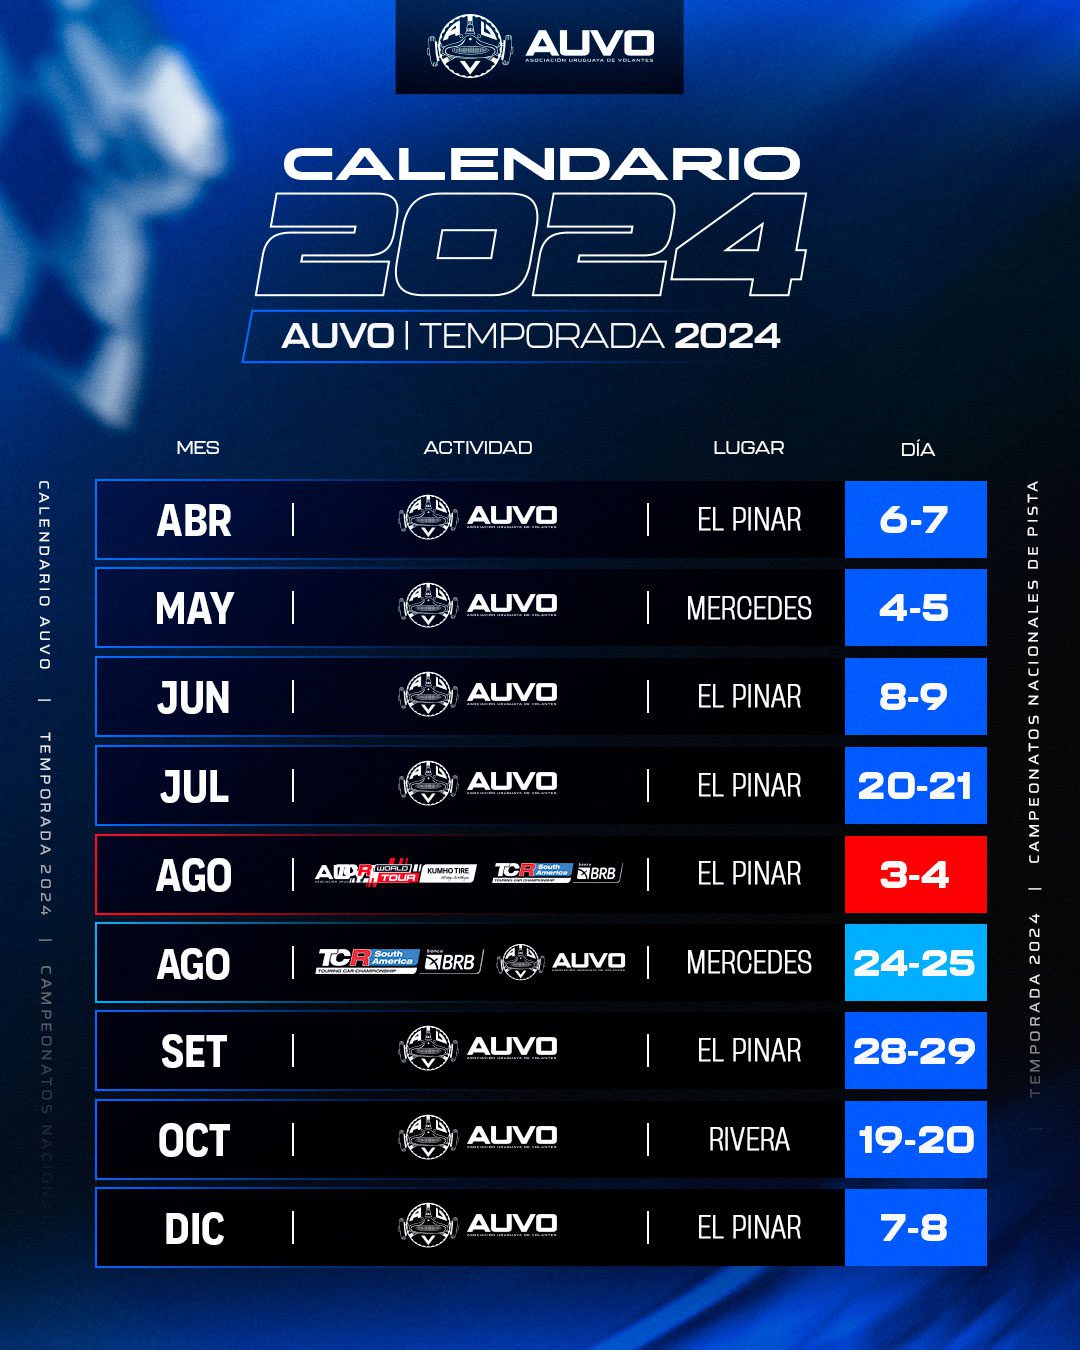 Calendario tentative de AUVO para el 2024